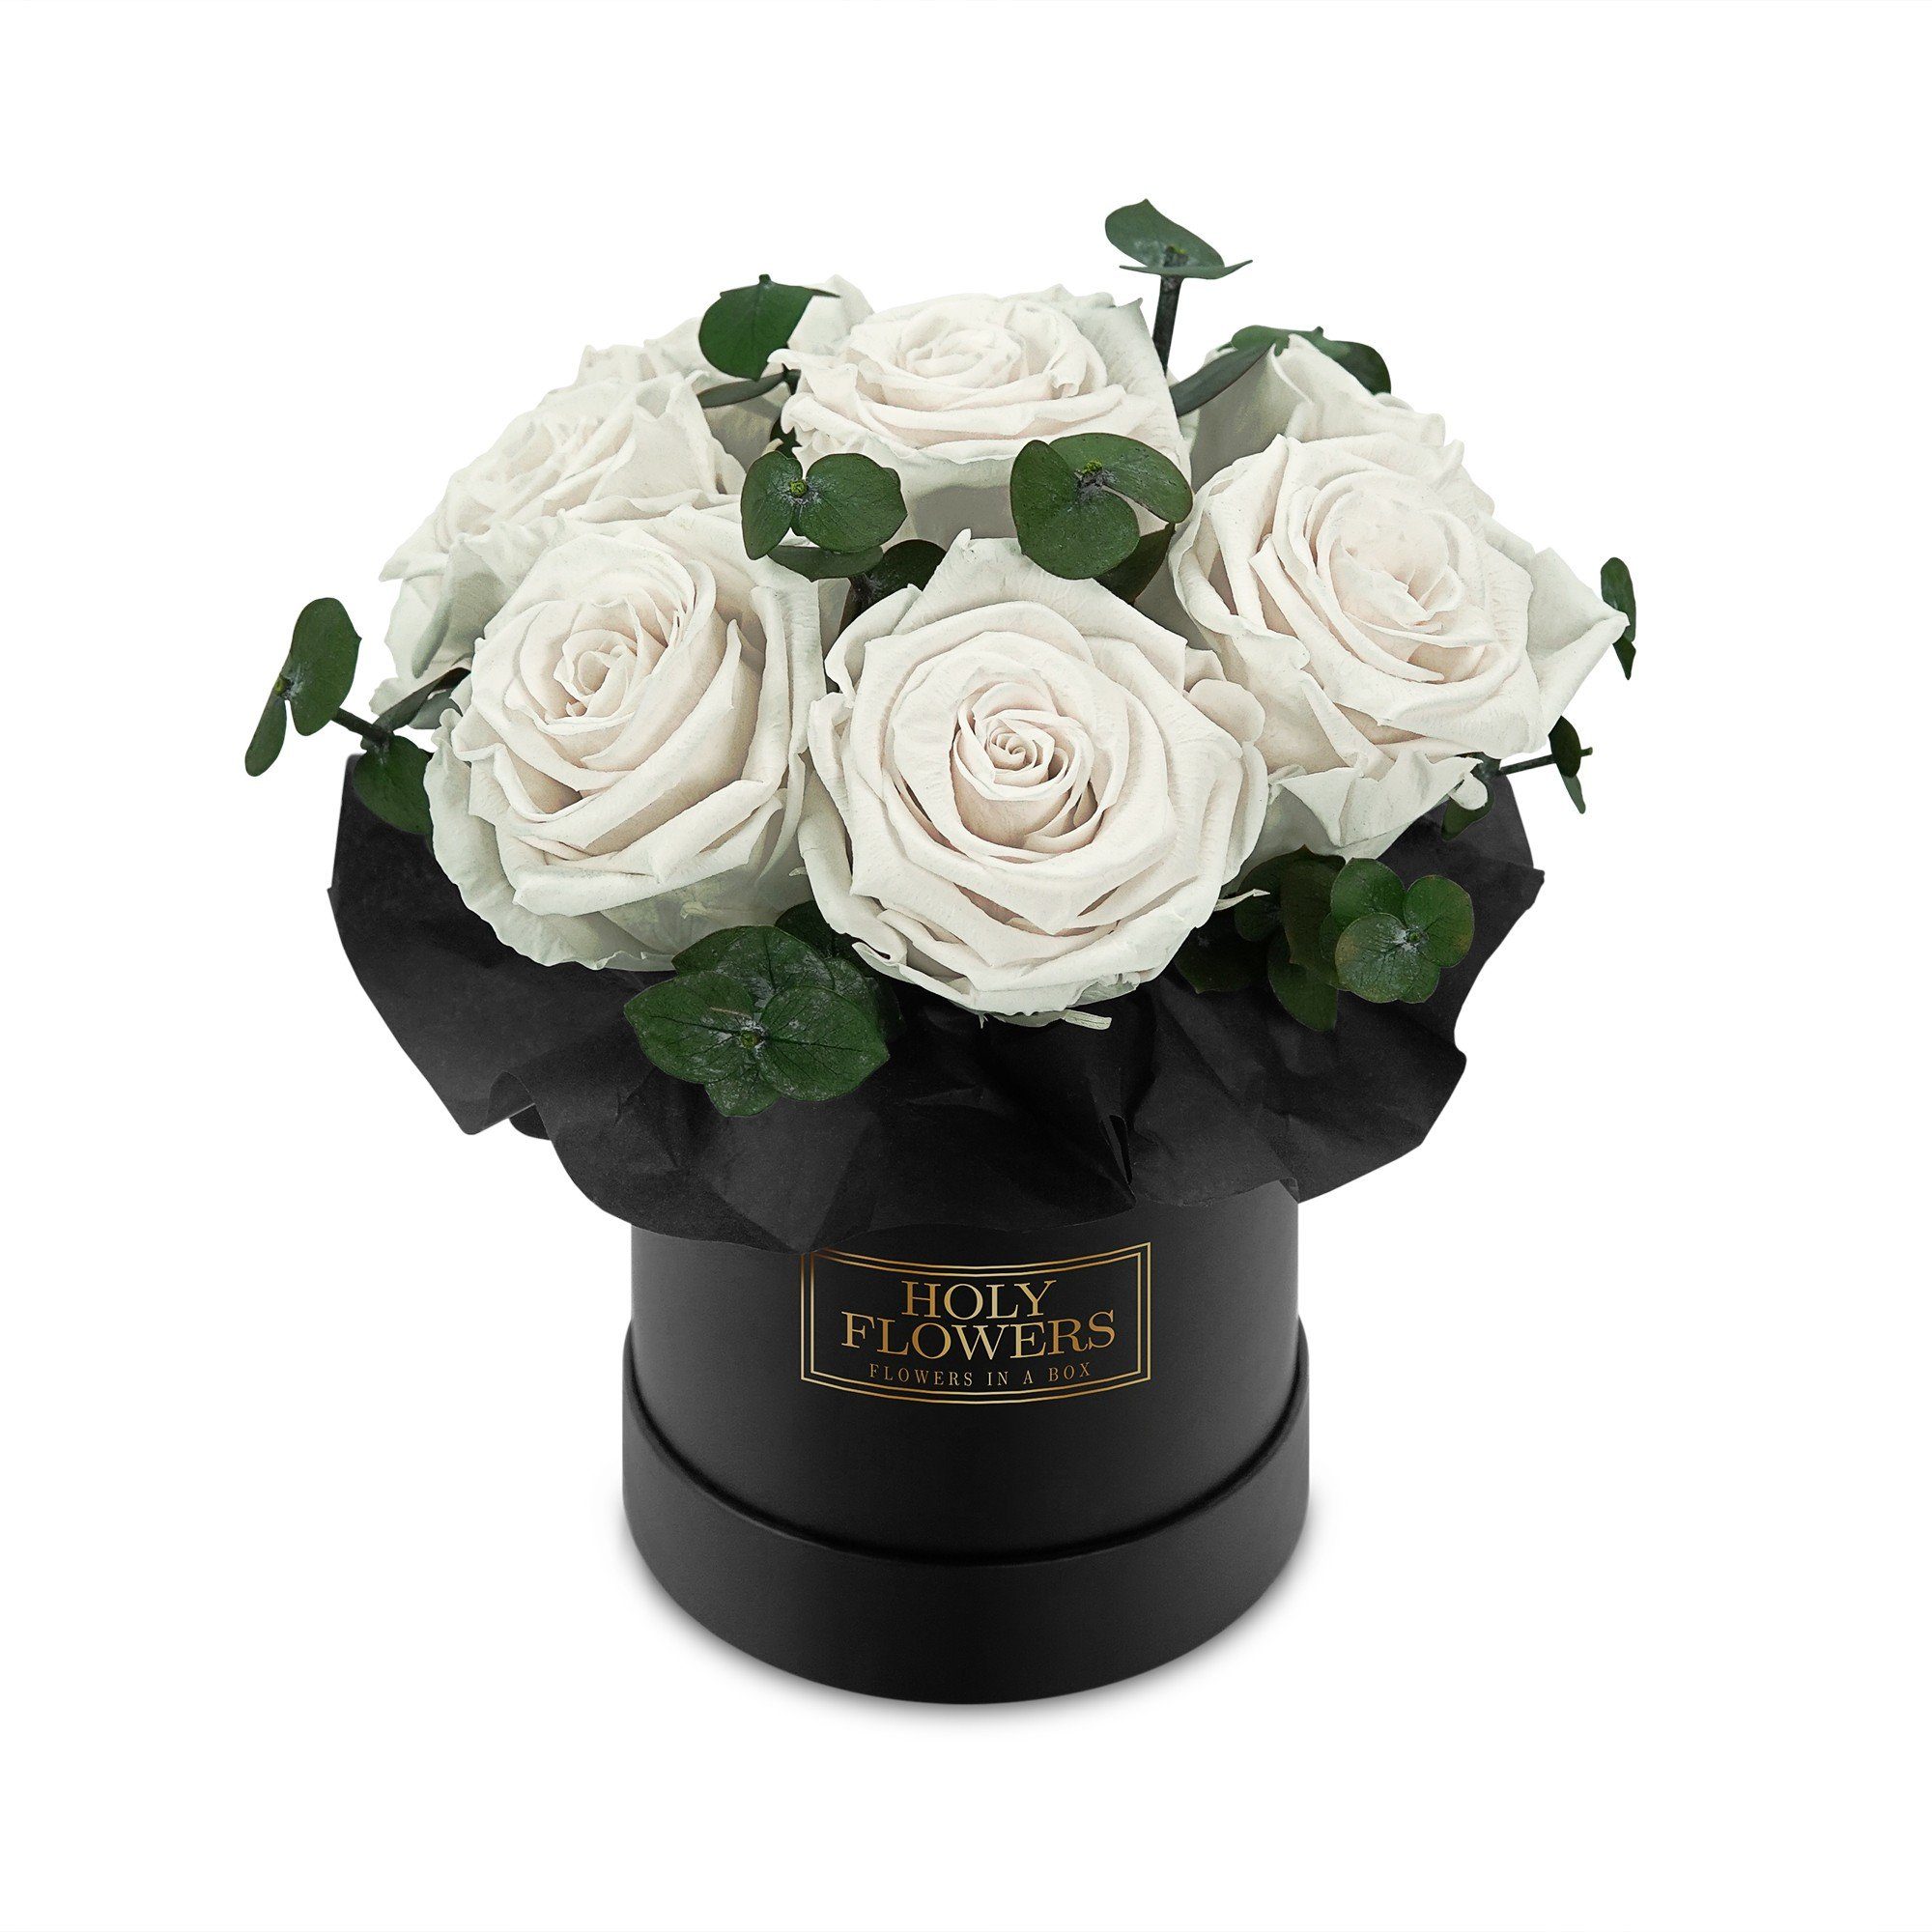 Kunstblume Rosenbox Bouquet I Rose, I Raul I mit Blumen Rosen 7-9 Flowers Jahre konservierte haltbar 3 Richter duftende Echte, by Infinity Holy